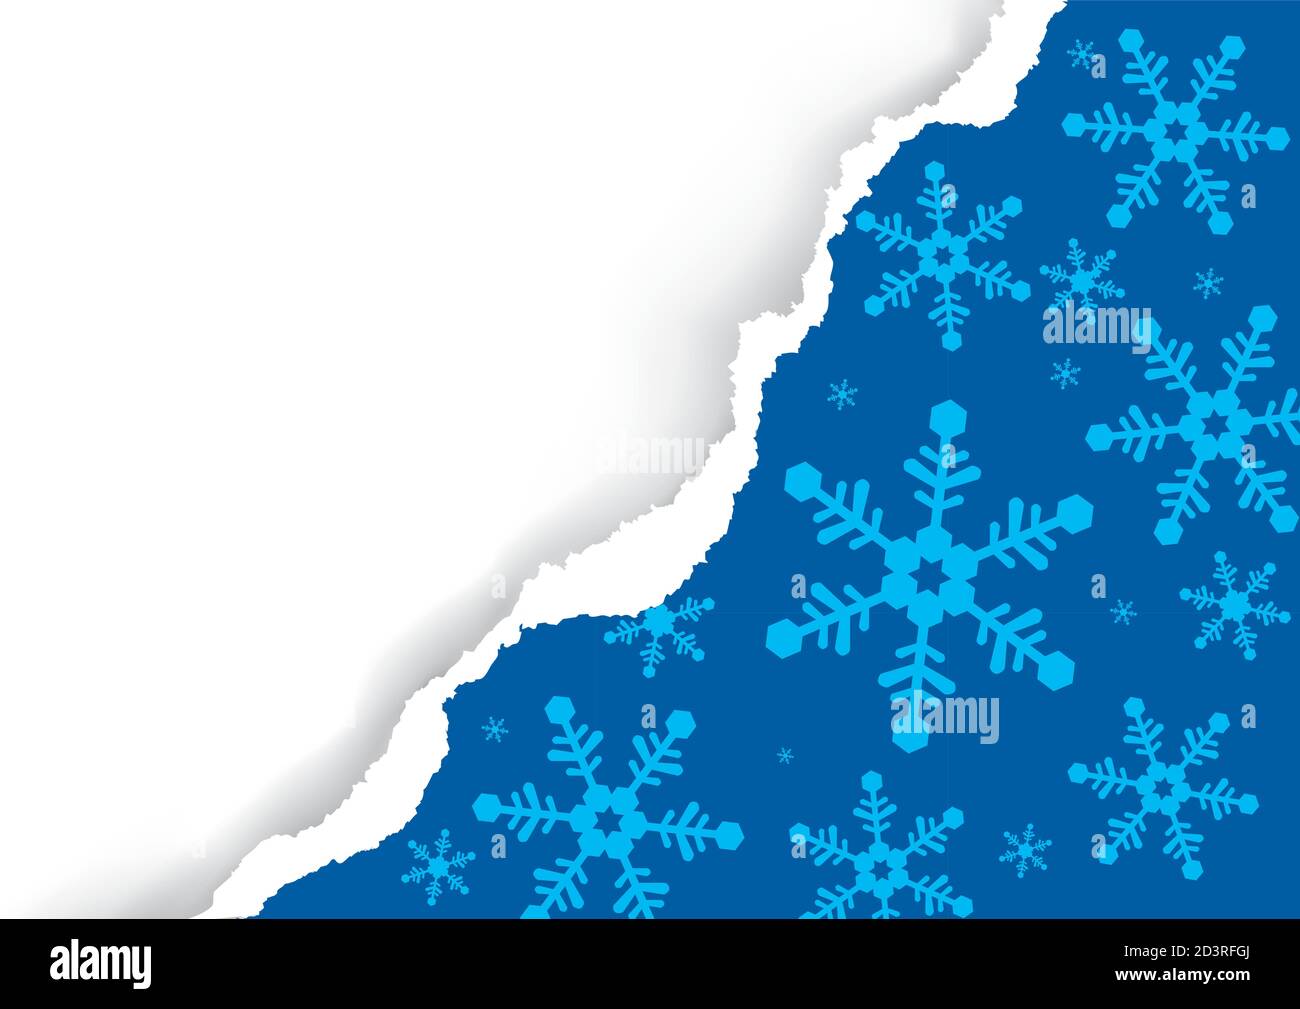 Natale strappato carta, sfondo blu con fiocchi di neve. Immagine di uno sfondo di carta rosso strappato con posizione per il testo o l'immagine. Illustrazione Vettoriale